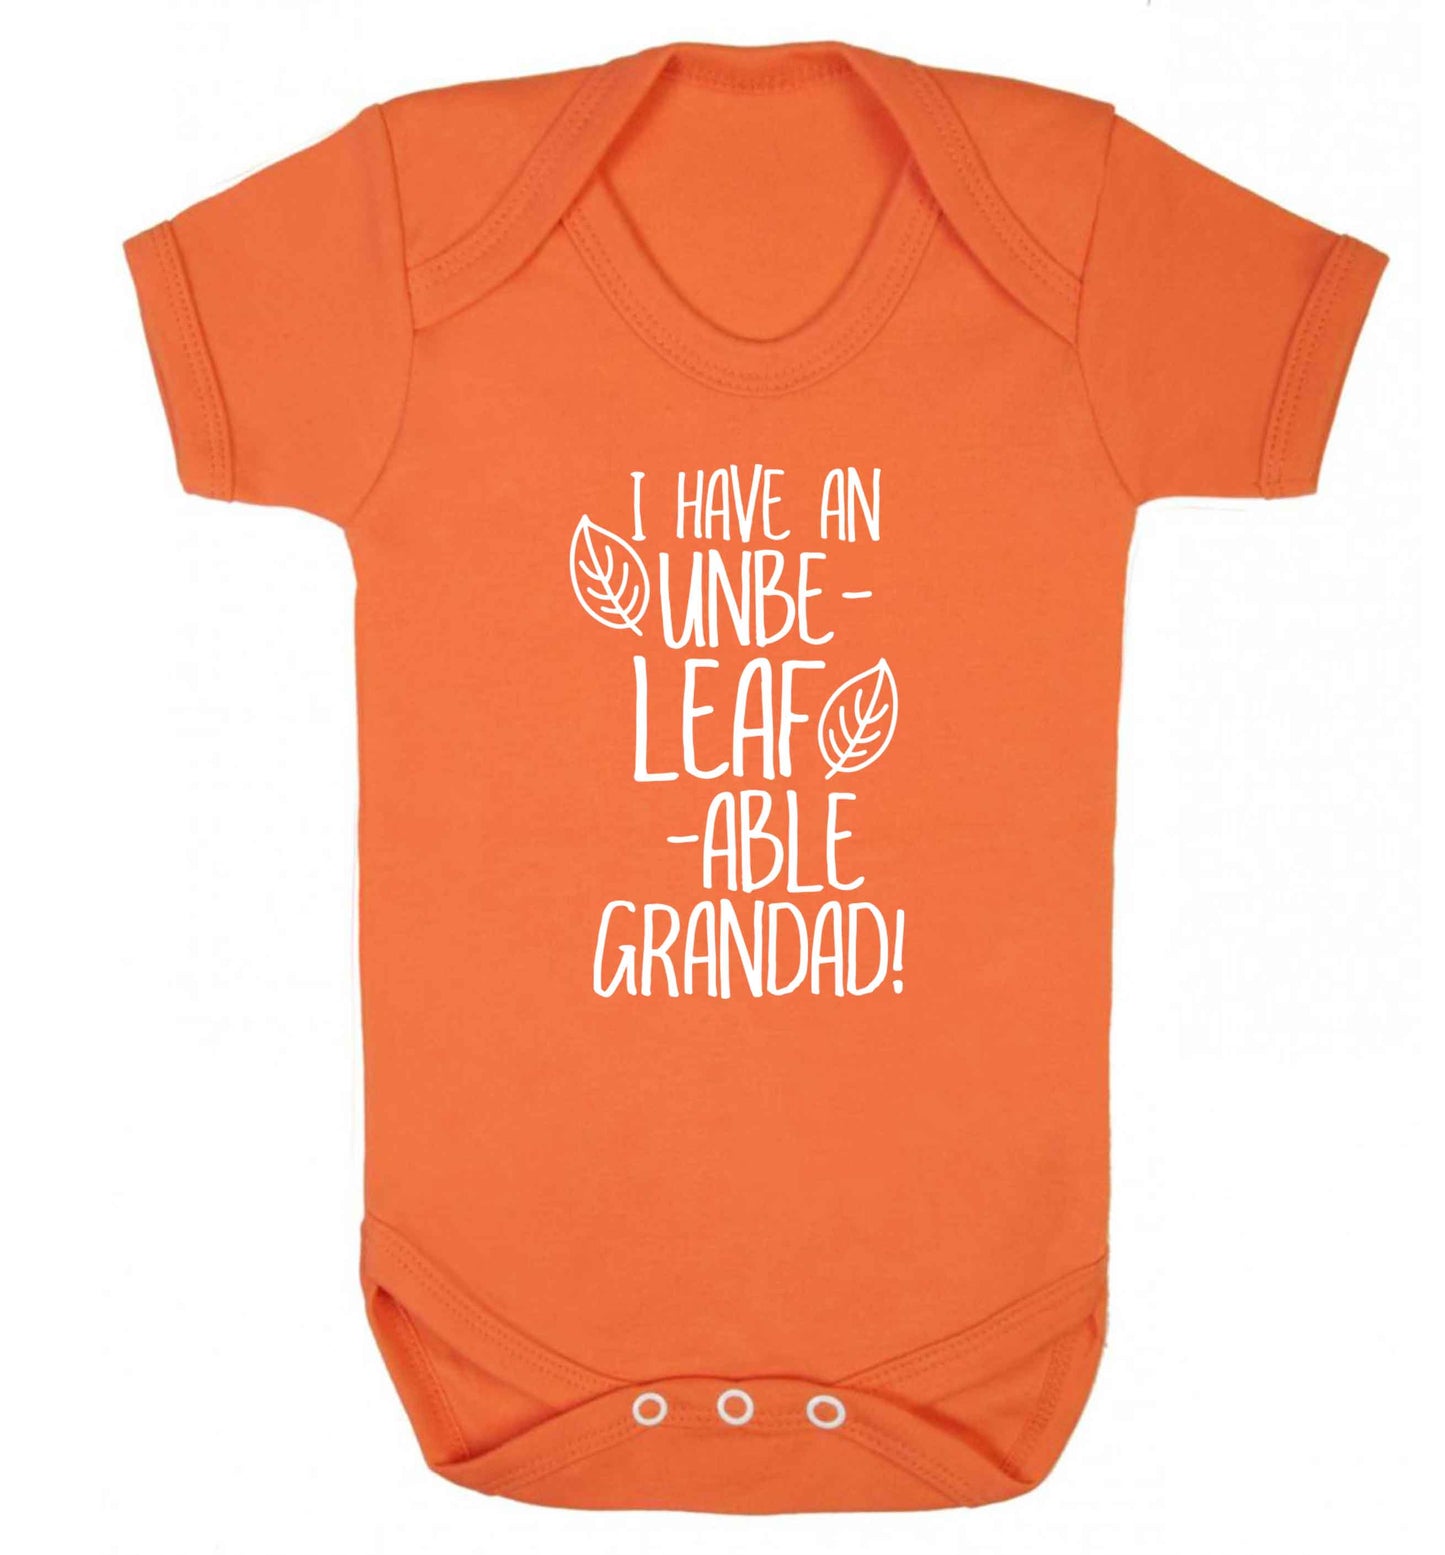 I have an unbe-leaf-able grandad Baby Vest orange 18-24 months